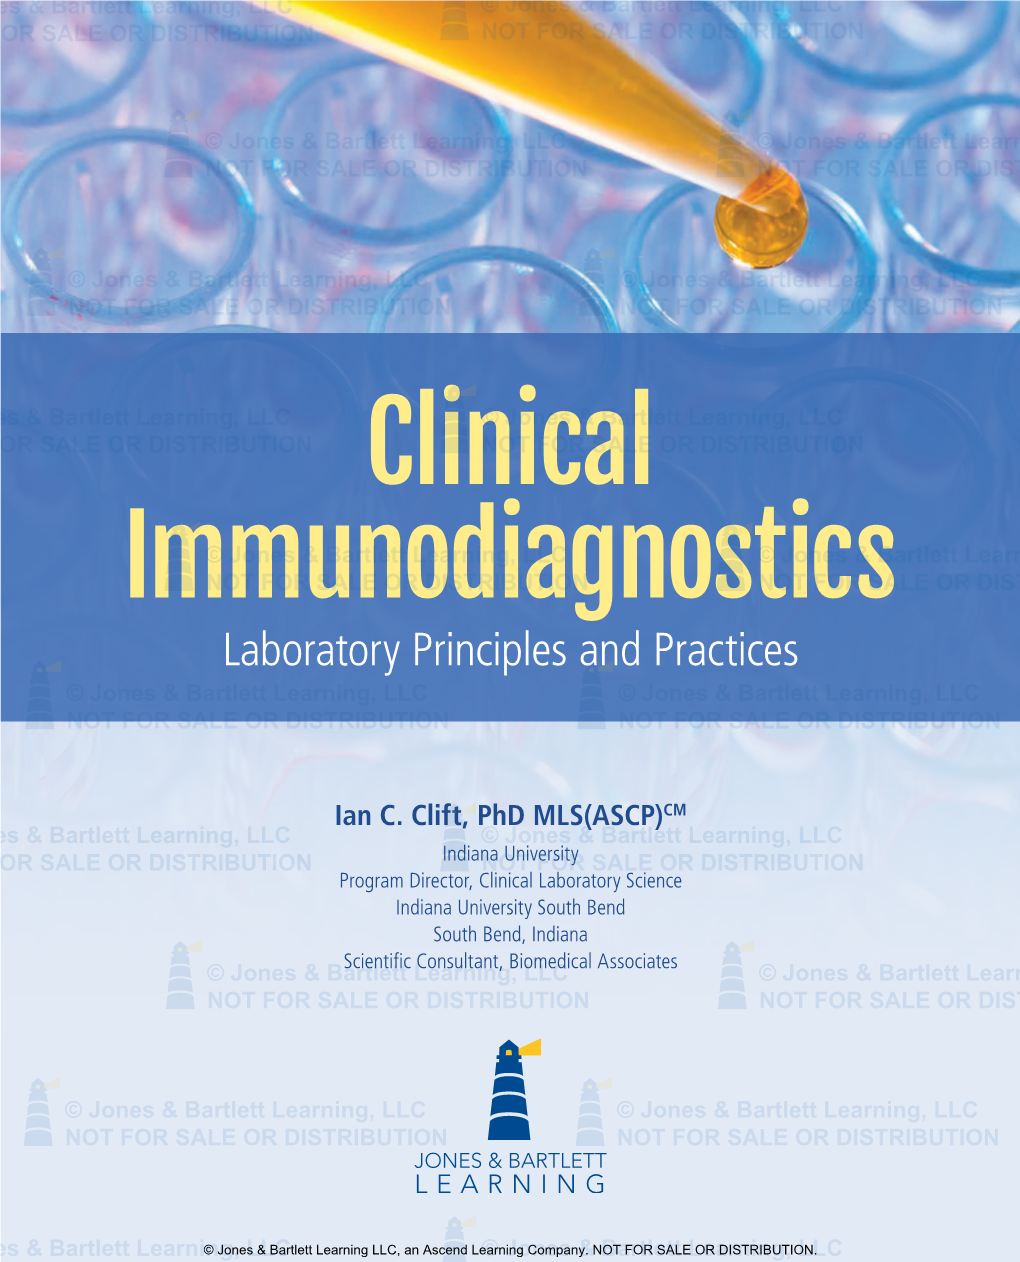 Clinical Immunodiagnostics